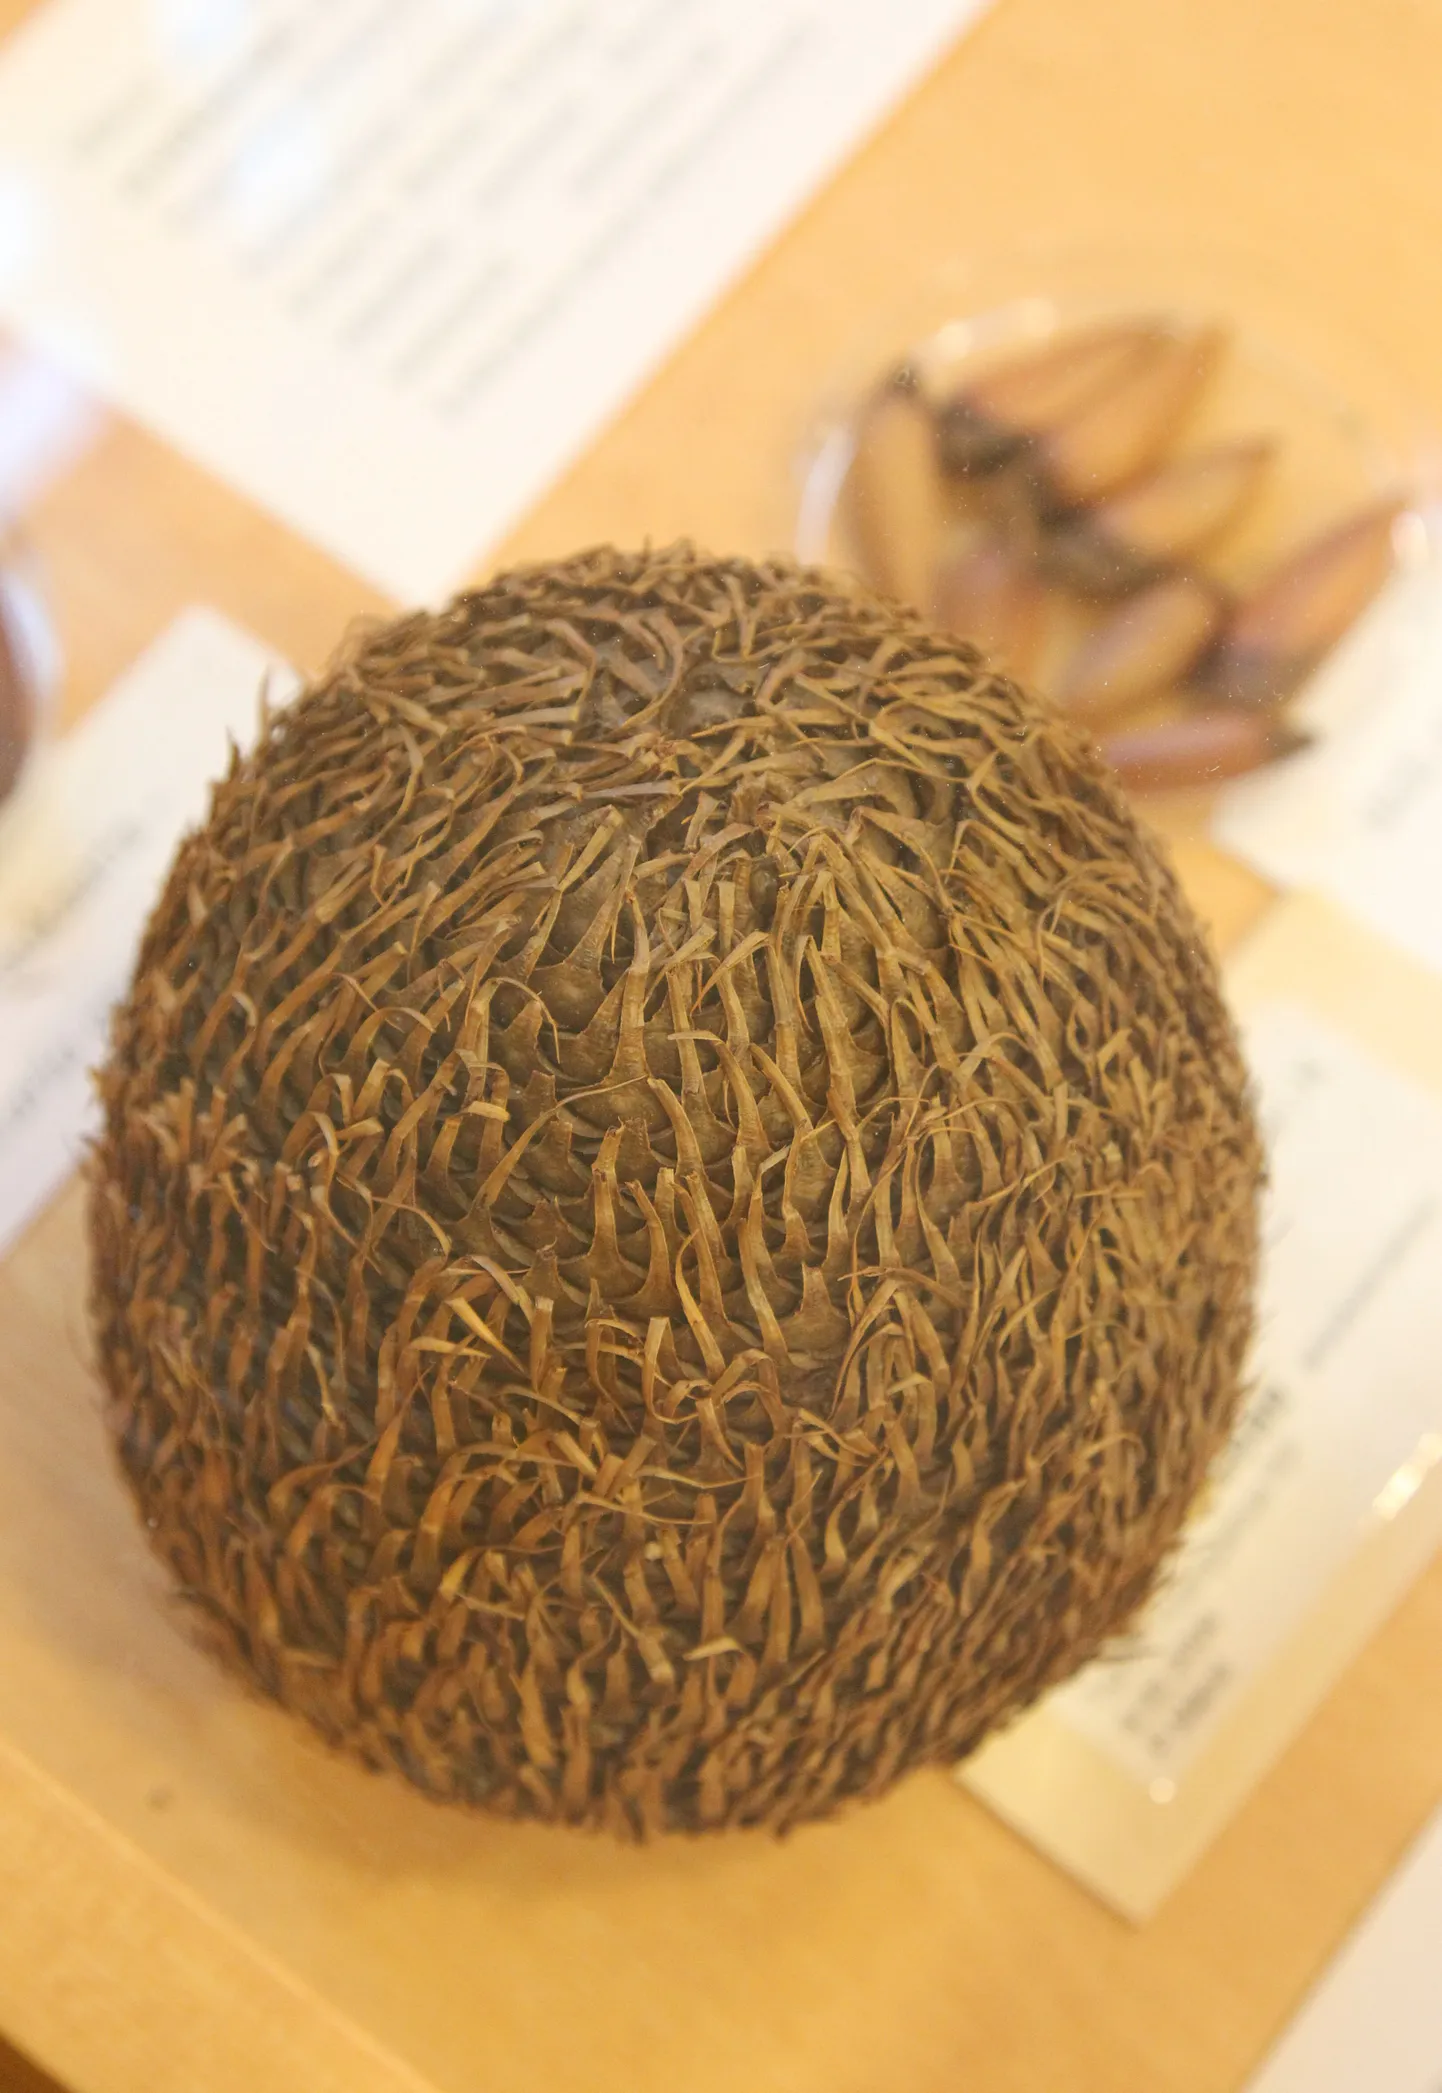 Pähkel mis pähkel?! Ei, see on Tšiili araukaaria käbi, selgub Tartu ülikooli botaanikaaias avatud pähklinäitusel.